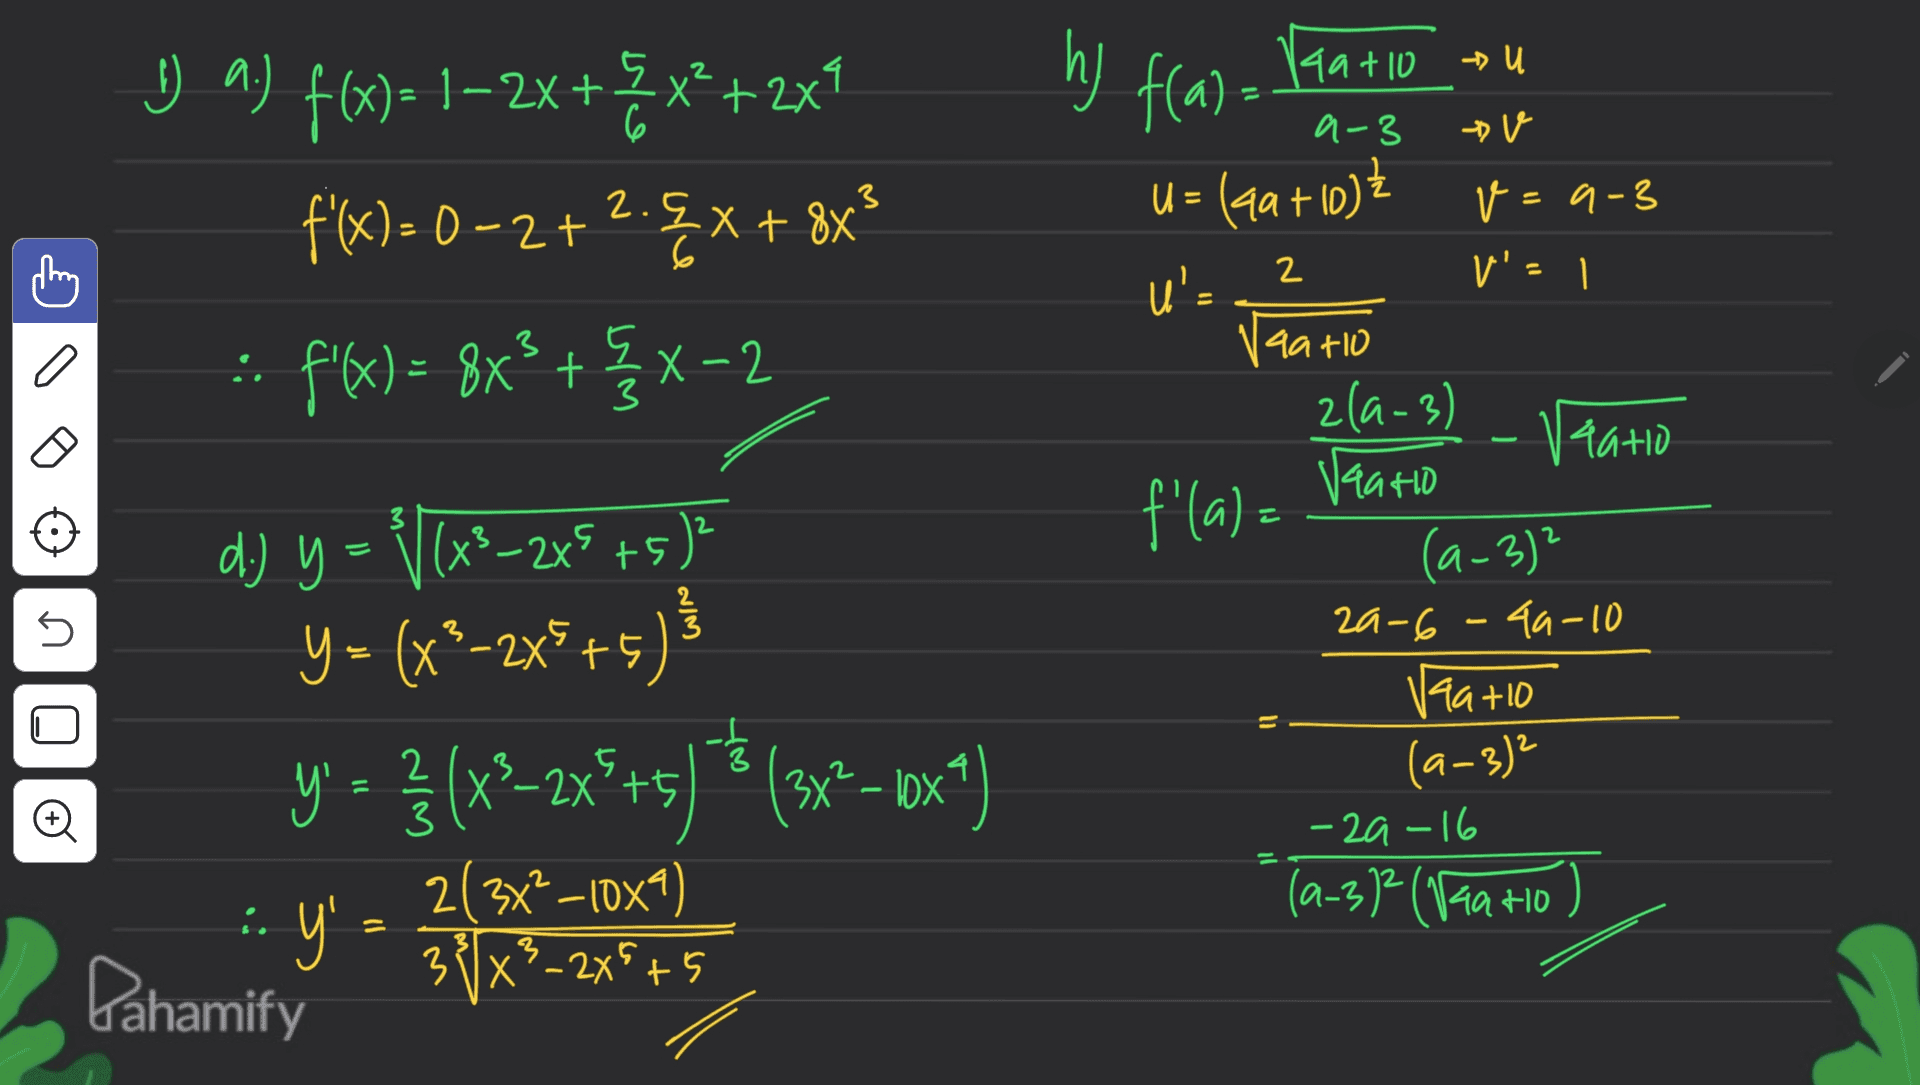 & * hy f(a). Ita tlo.com 6 2. {X + 8x 3 U_^) f(x)= 1–2x+Zx?+2x1 a f(x) = 0 -2+2. Ext? :: ? -- f/6)= 8x} + {x-2 X2 2 3 a - 3 Vaatio tu a-3 v U = (40+10) v=9-3 u's V'e 1 4a110 zla-3) Vaatio Vaario f'(a) = (4-3)? 2a-6 -49-10 + (9-3) - 29-16 (a-312 (Vaa Ho ) E 2 - 5 149+10 d.) y = (x3–2x5+5) Y = (x’-2x5+5 Y ) y = } (x2–2x+5) * (3x2 – 6x4) ' X? · y' - 3x+5 5 © 2 3 2034?_10x4) 3 ľX²_225+5 H0 = 3 - Pahamify 